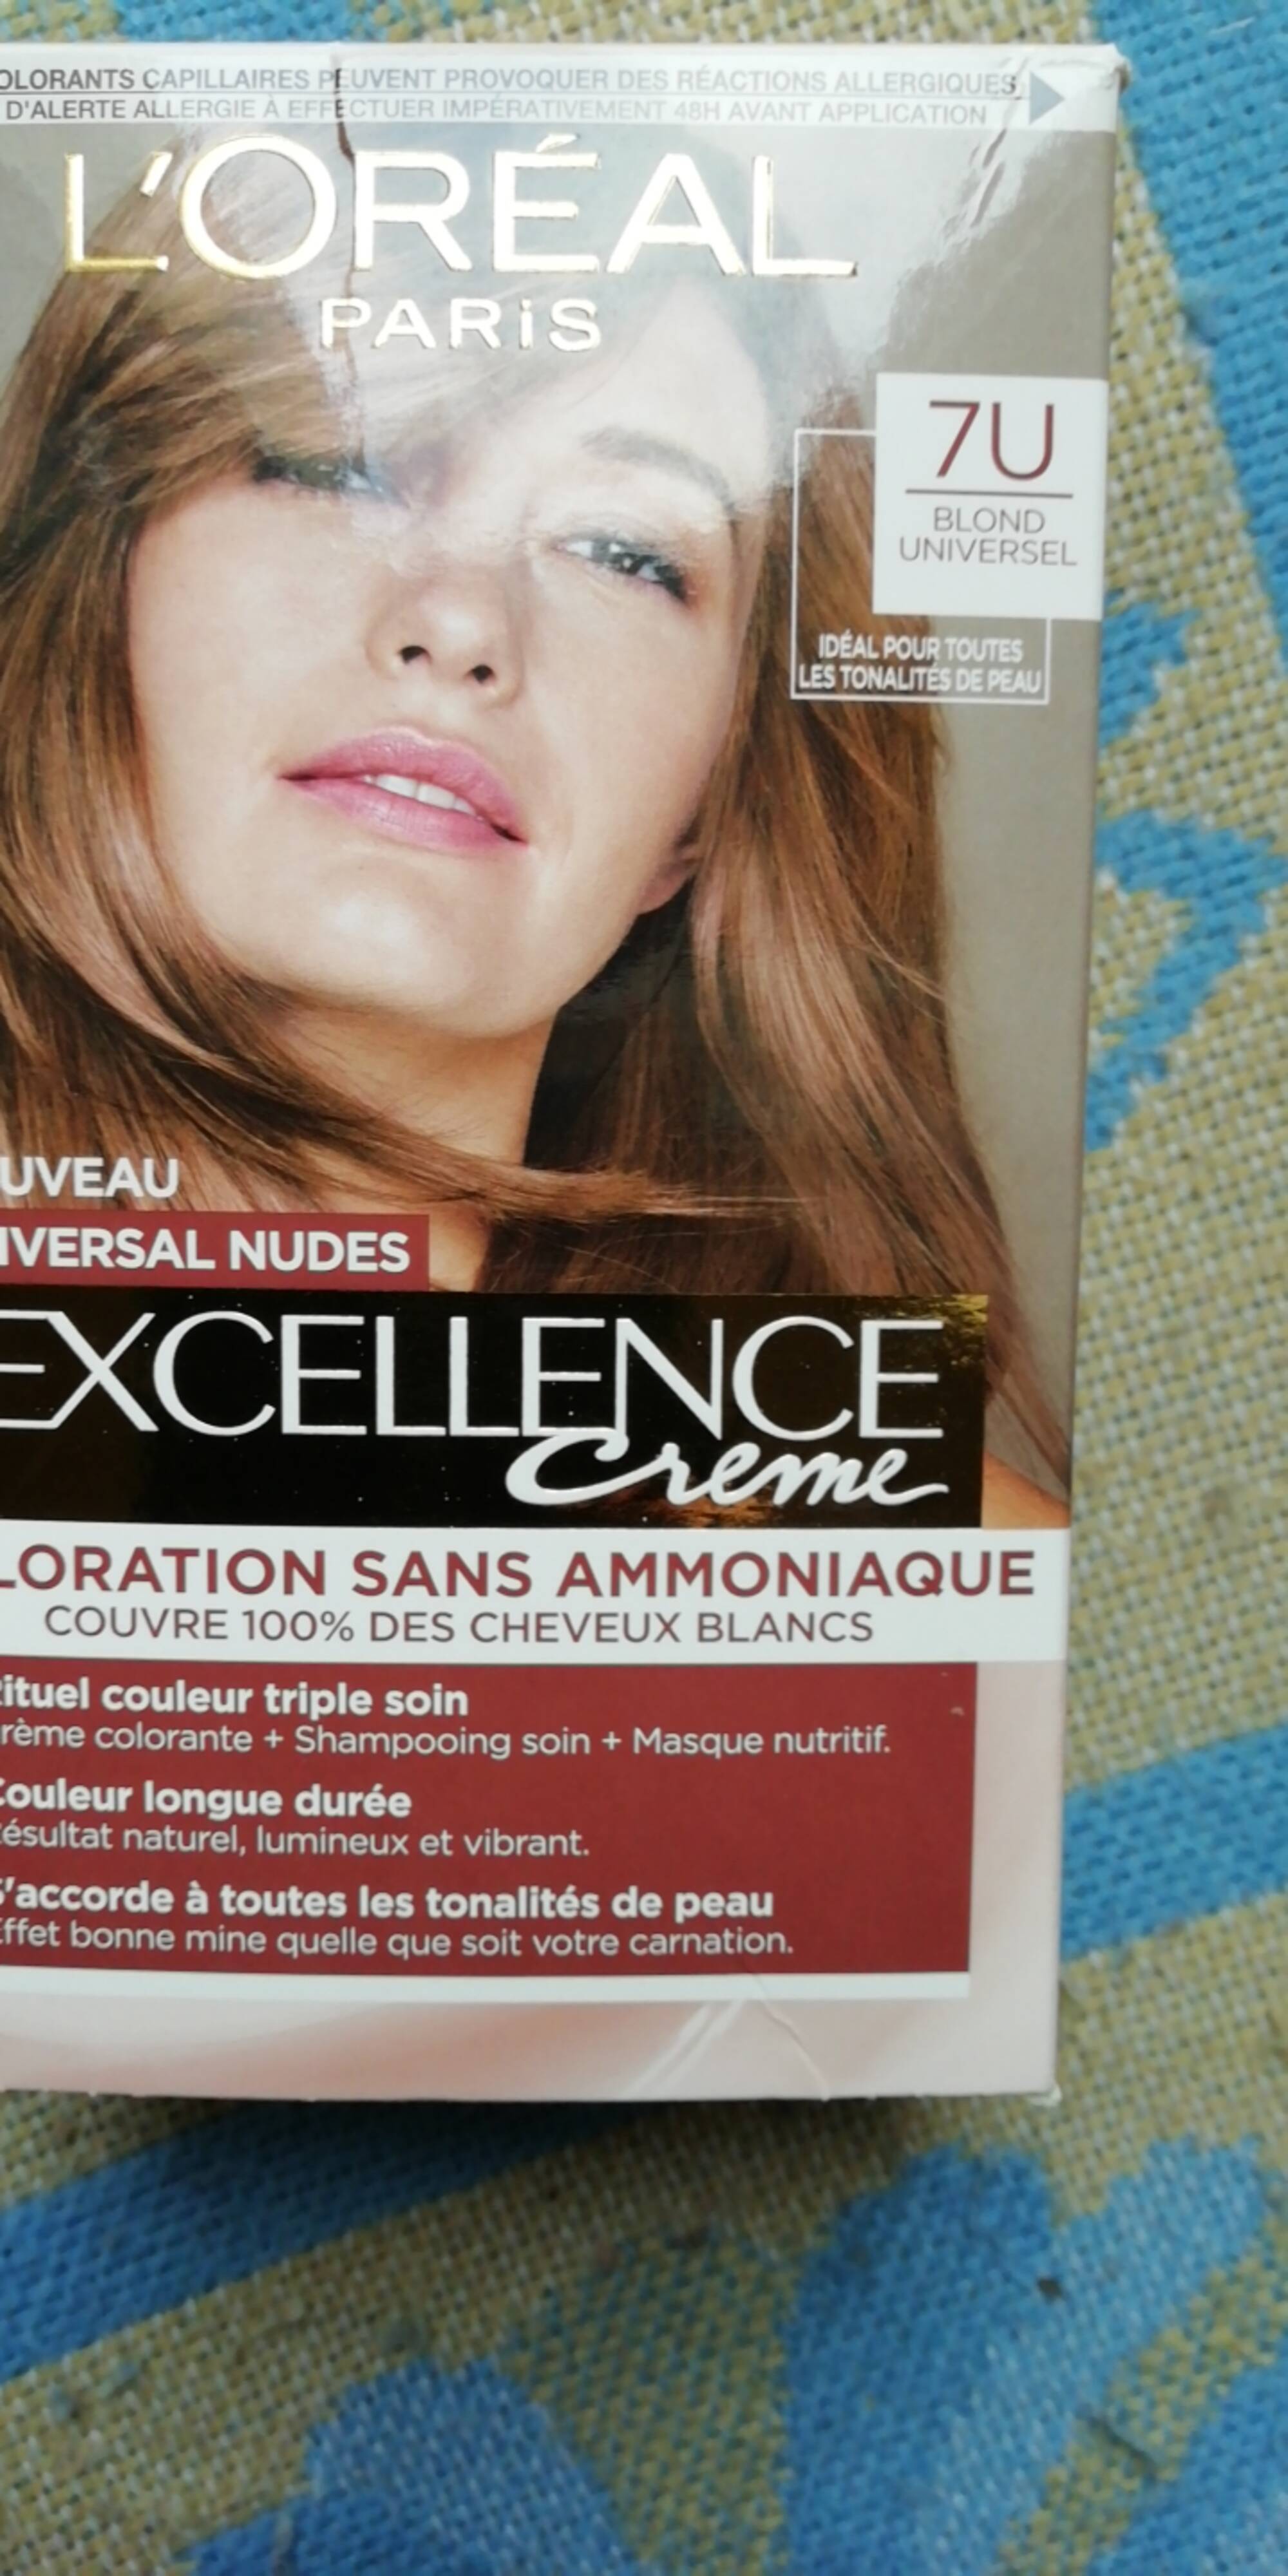 L'ORÉAL PARIS - Excellence crème - Coloration sans ammoniaque 7U blond universel